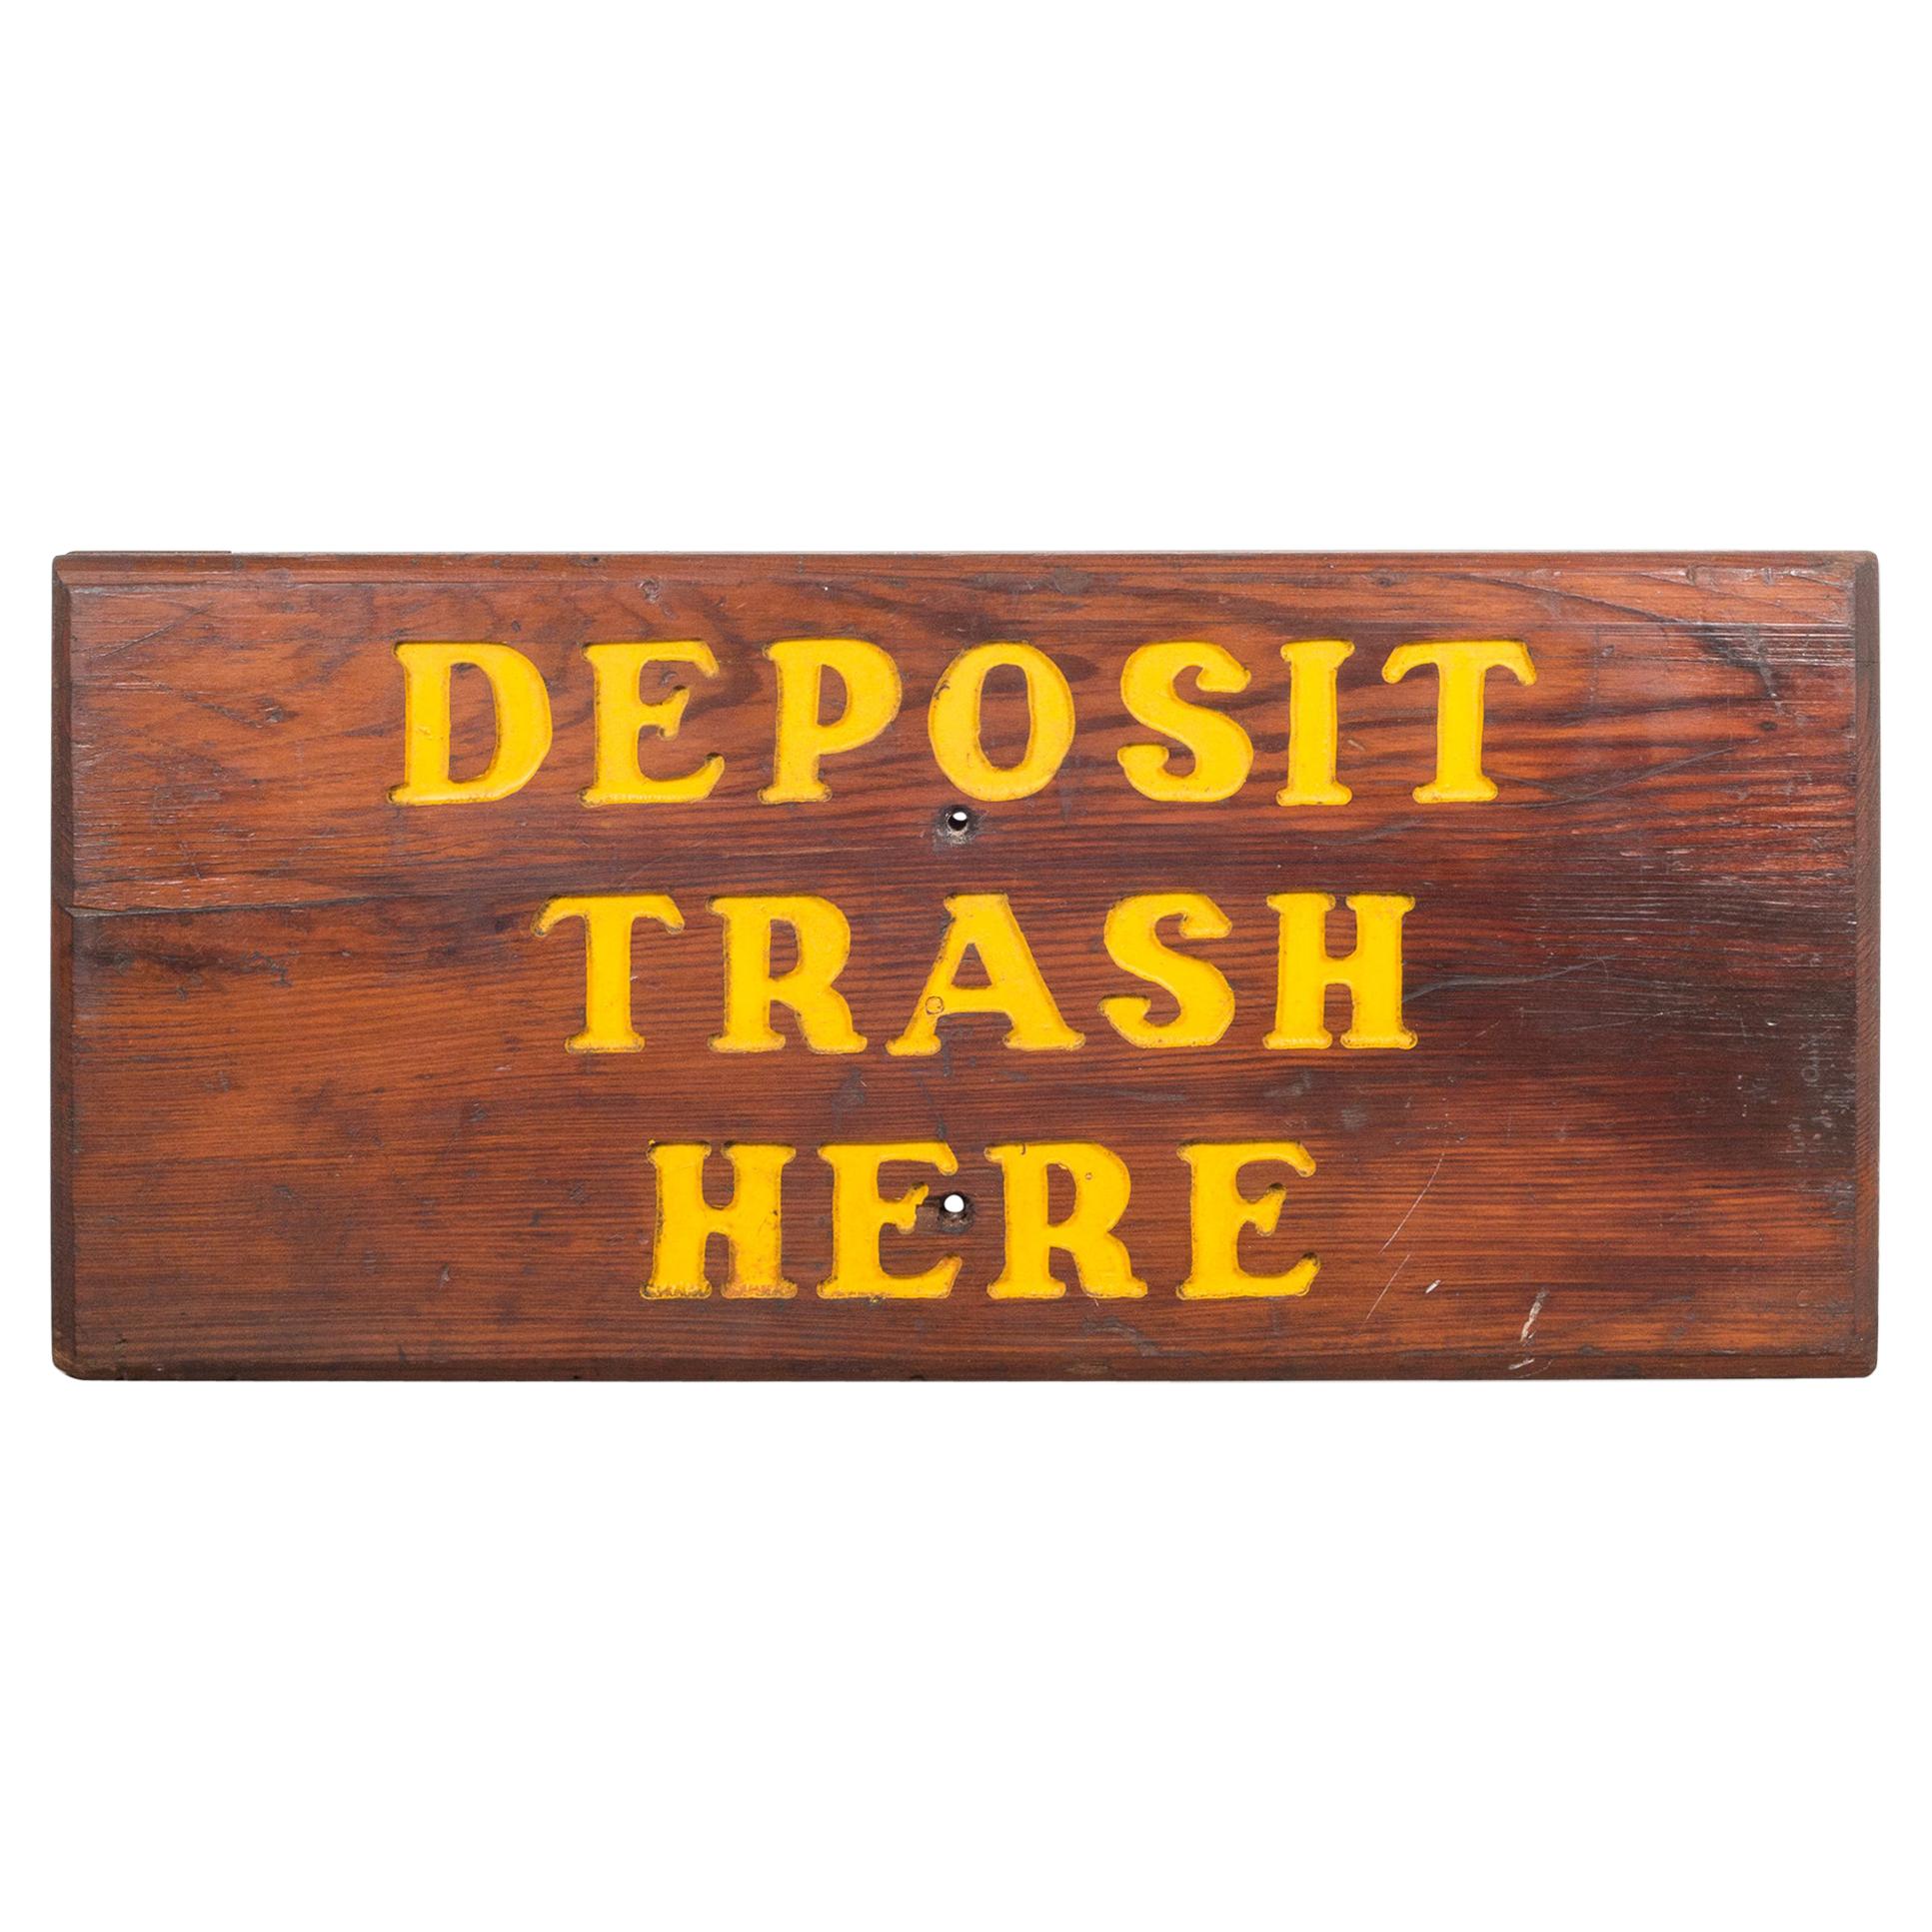 Hand Carved Wood "Deposit Trash Here" Sign c.1940